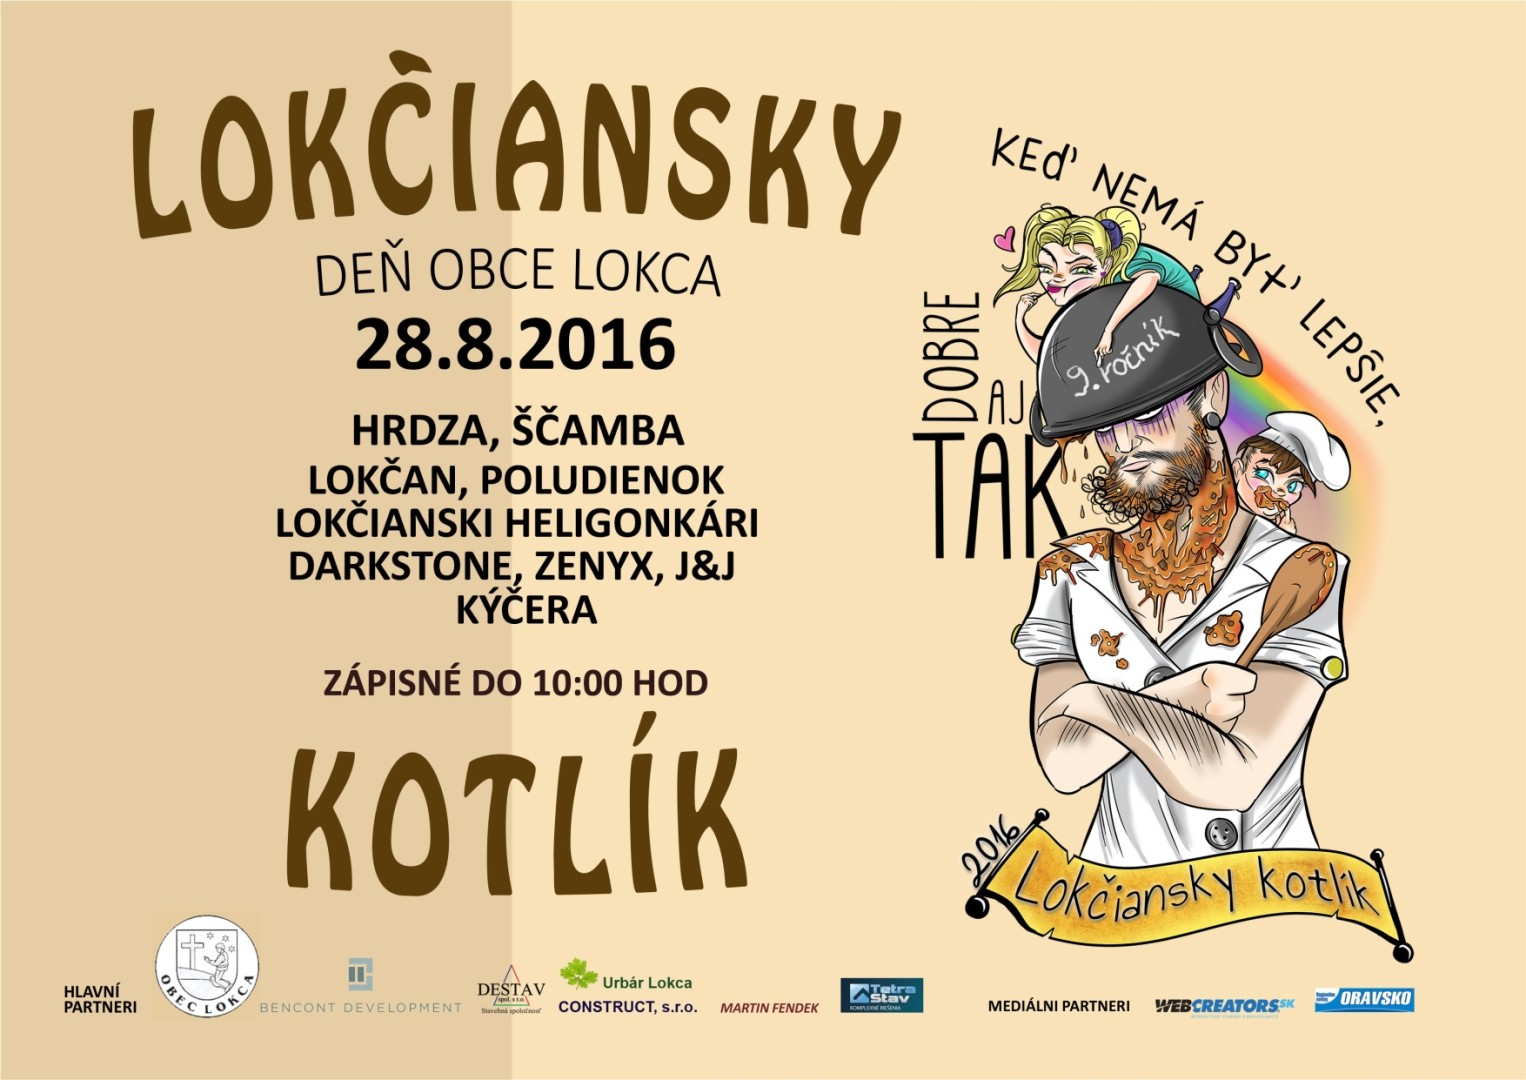 Deň obce Lokca 2016 a Lokčiansky kotlík - 9. ročník